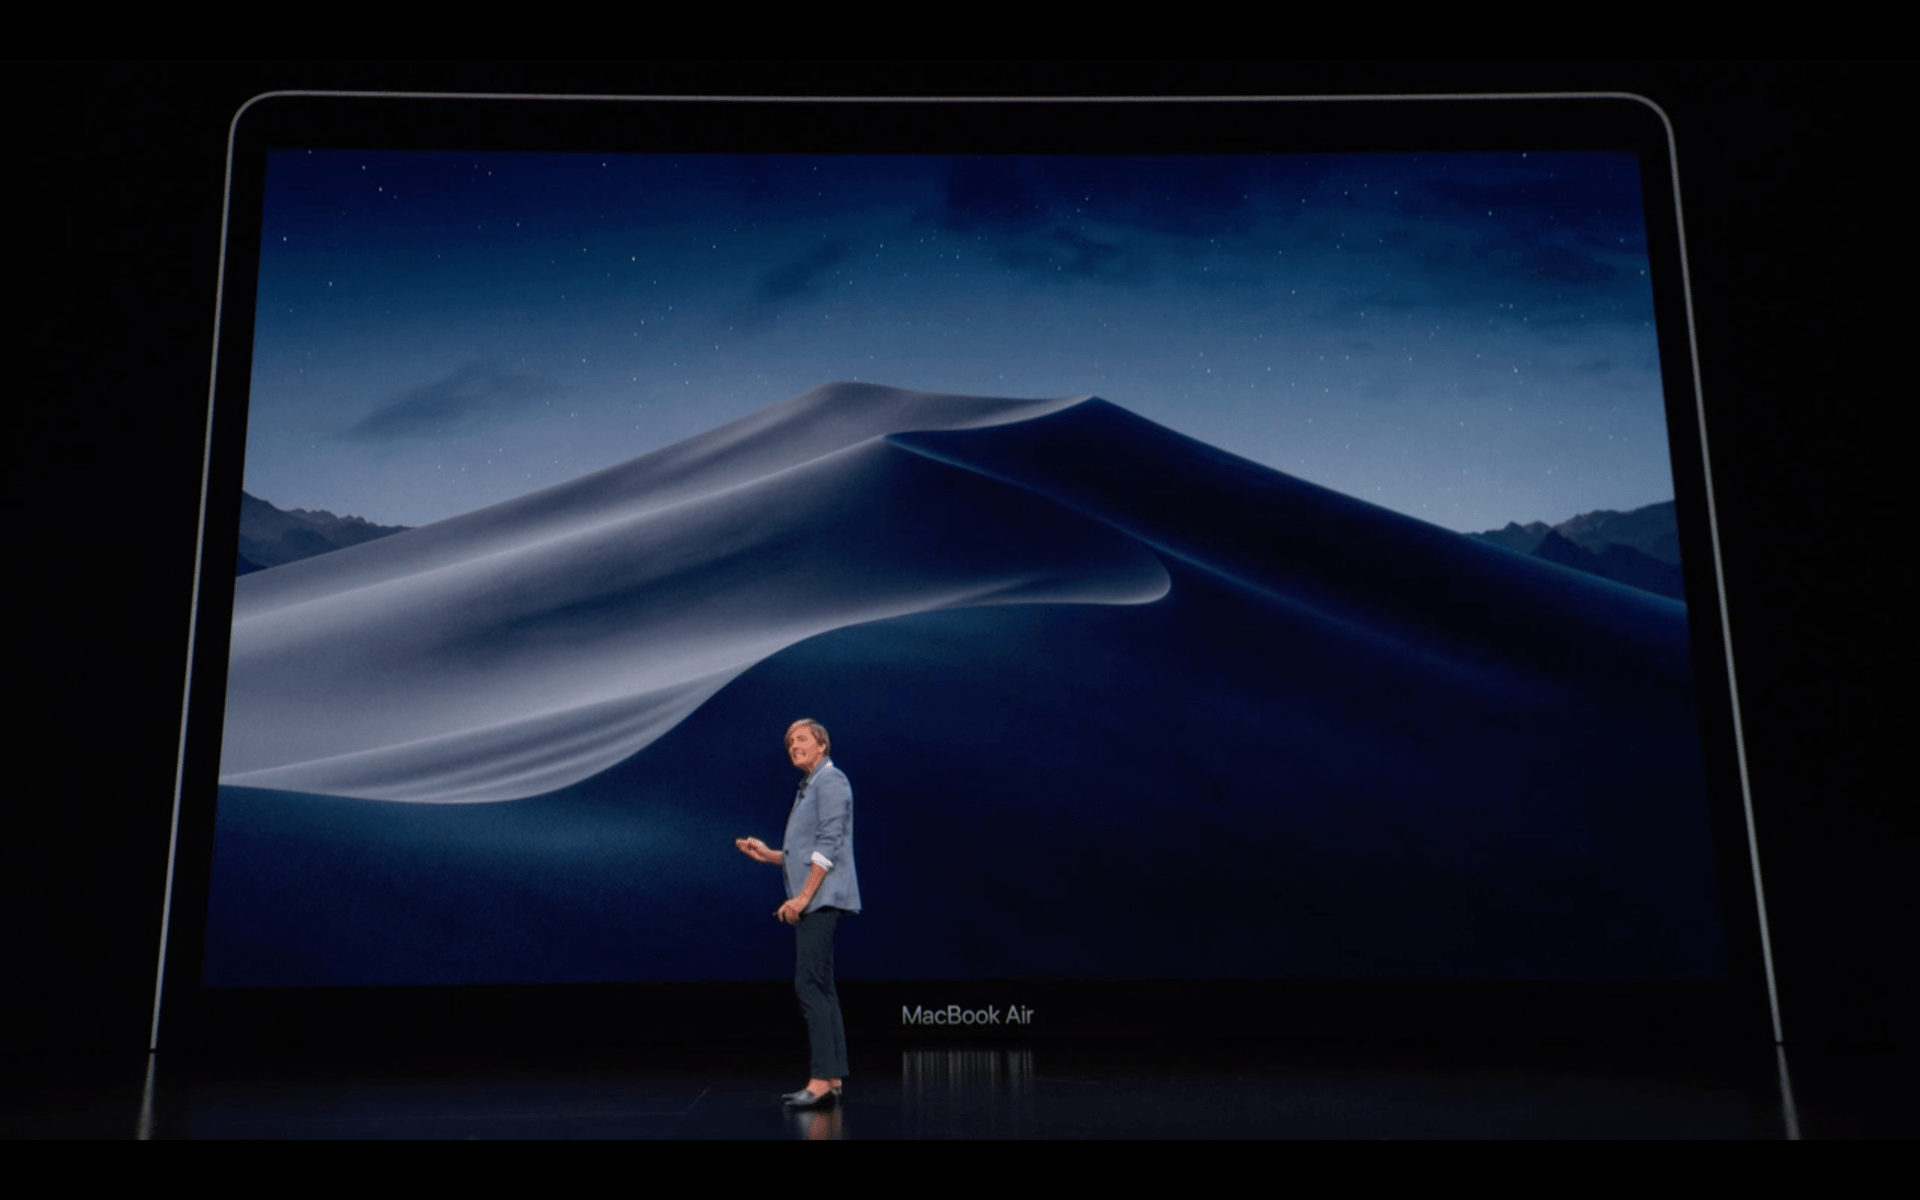 Appena presentato il nuovo MacBook Air totalmente riprogettato 3